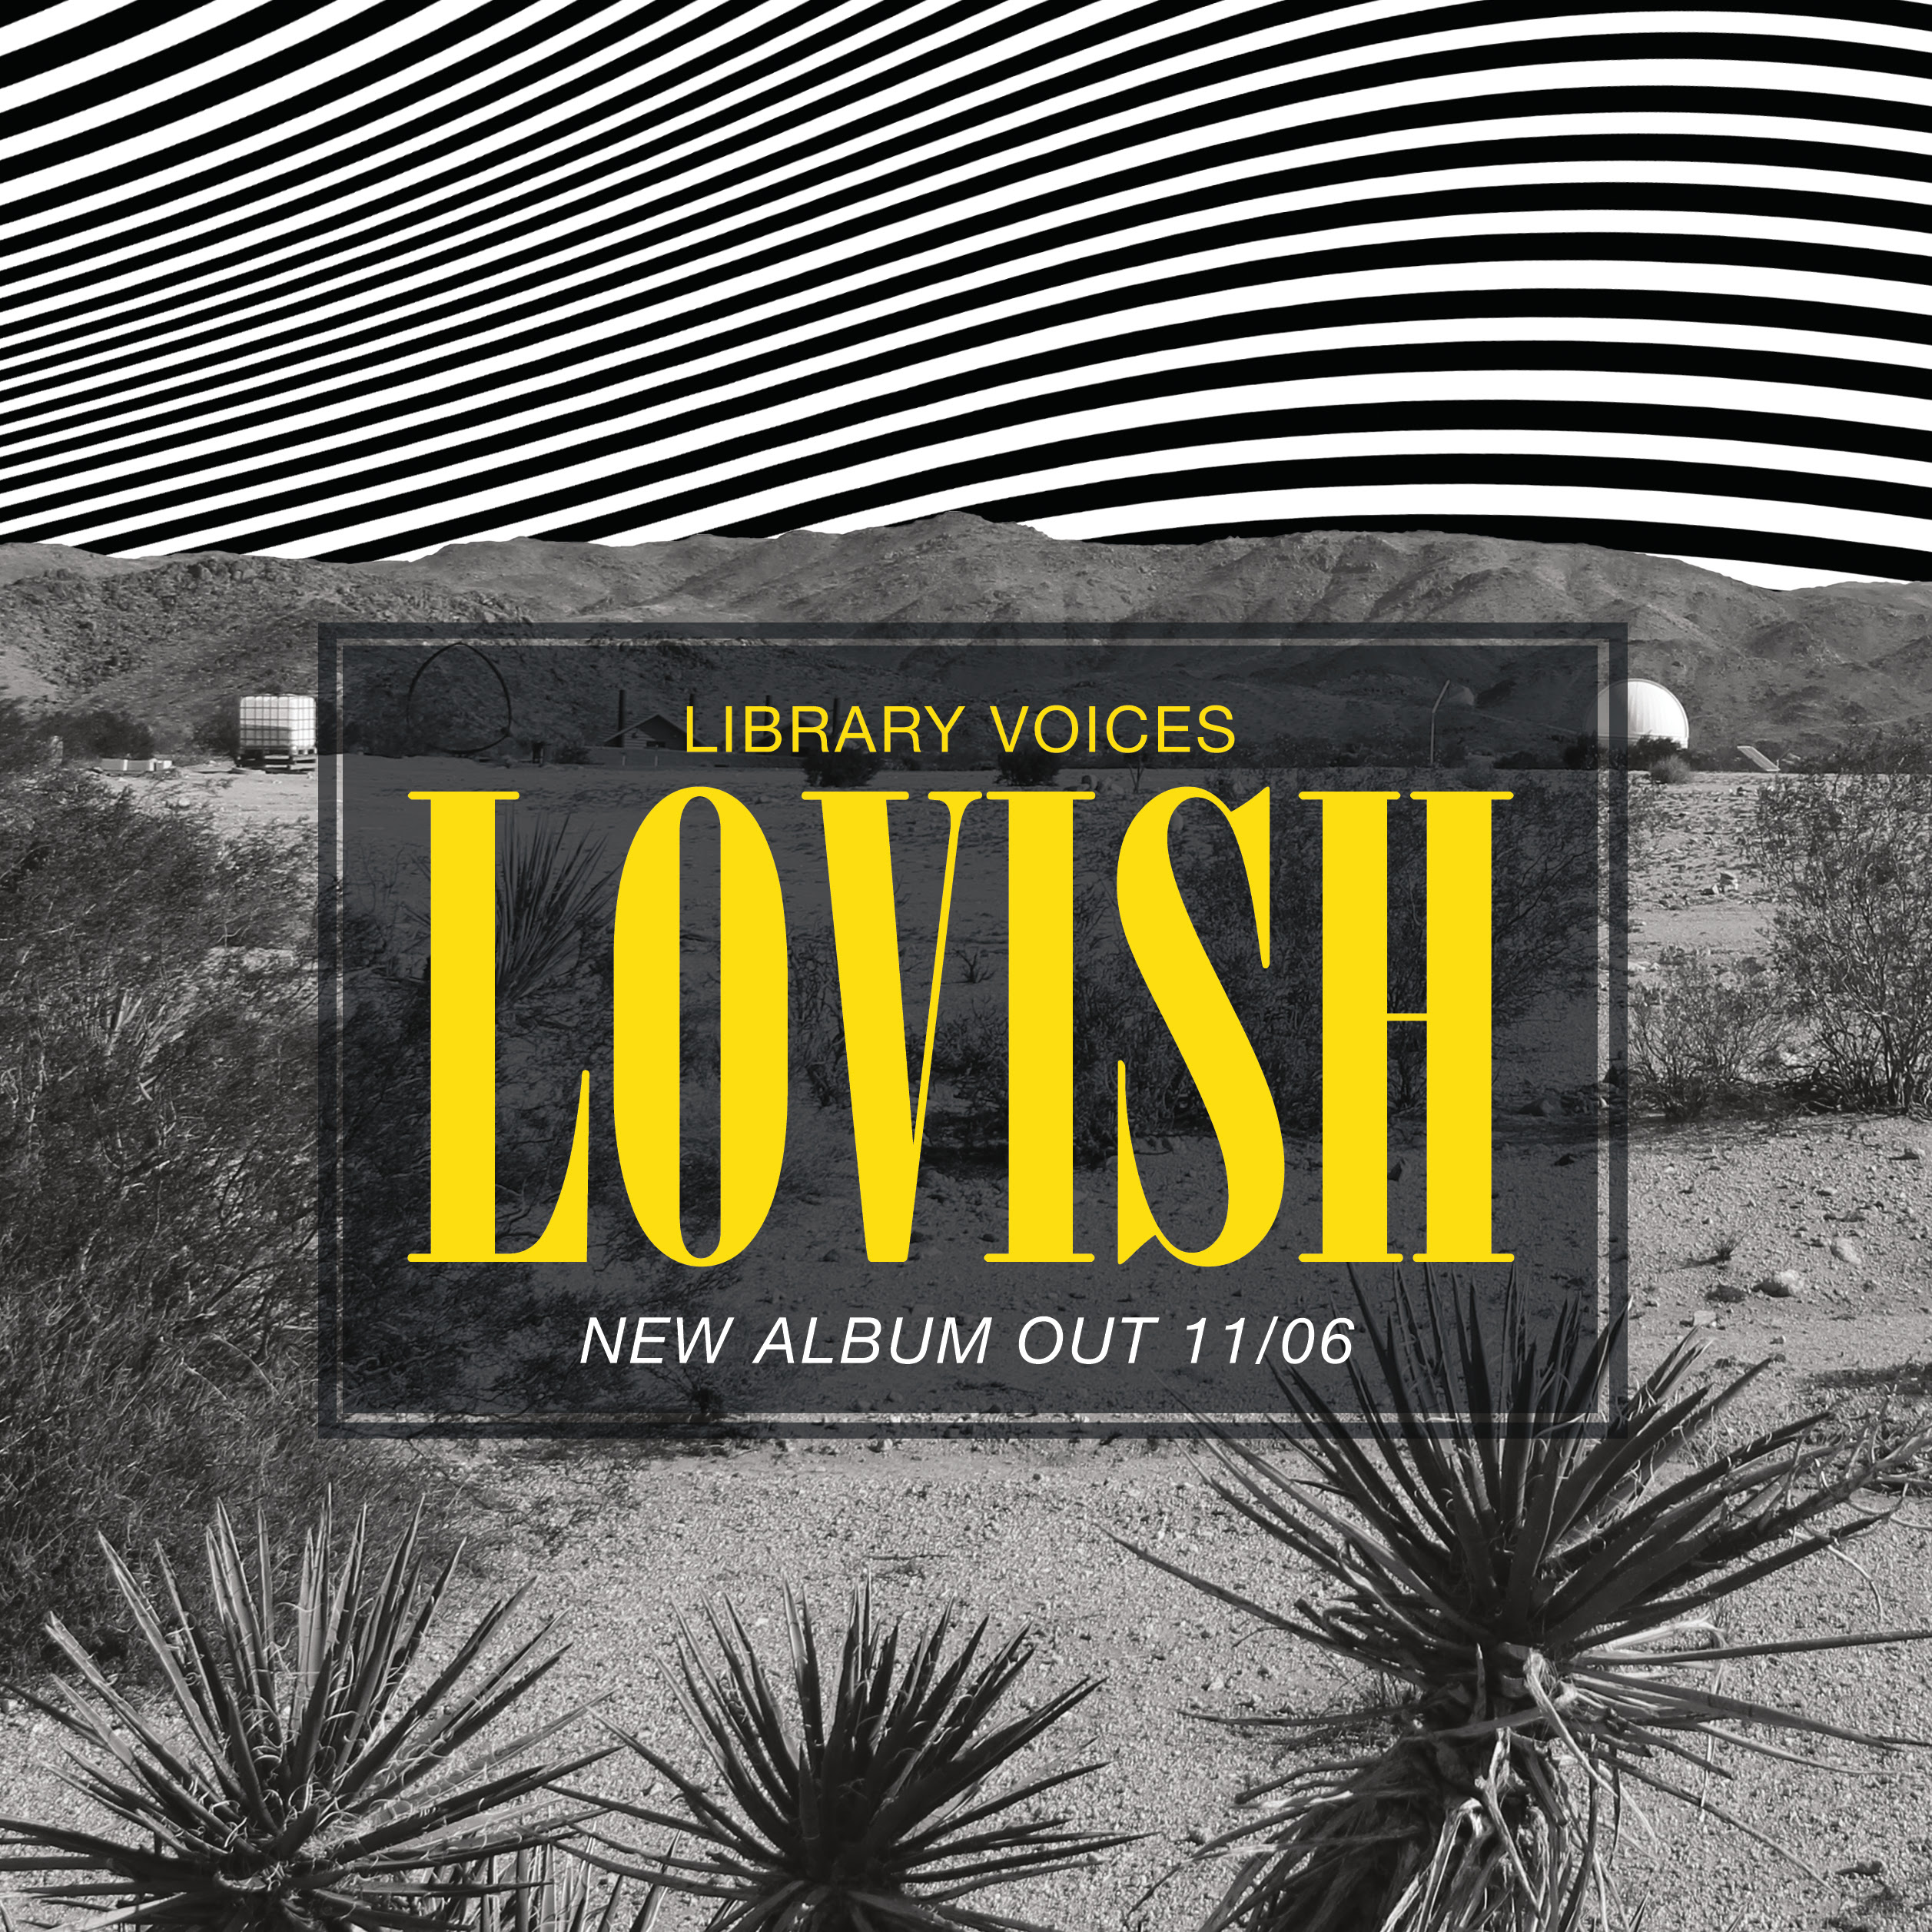 Library Voices New Album